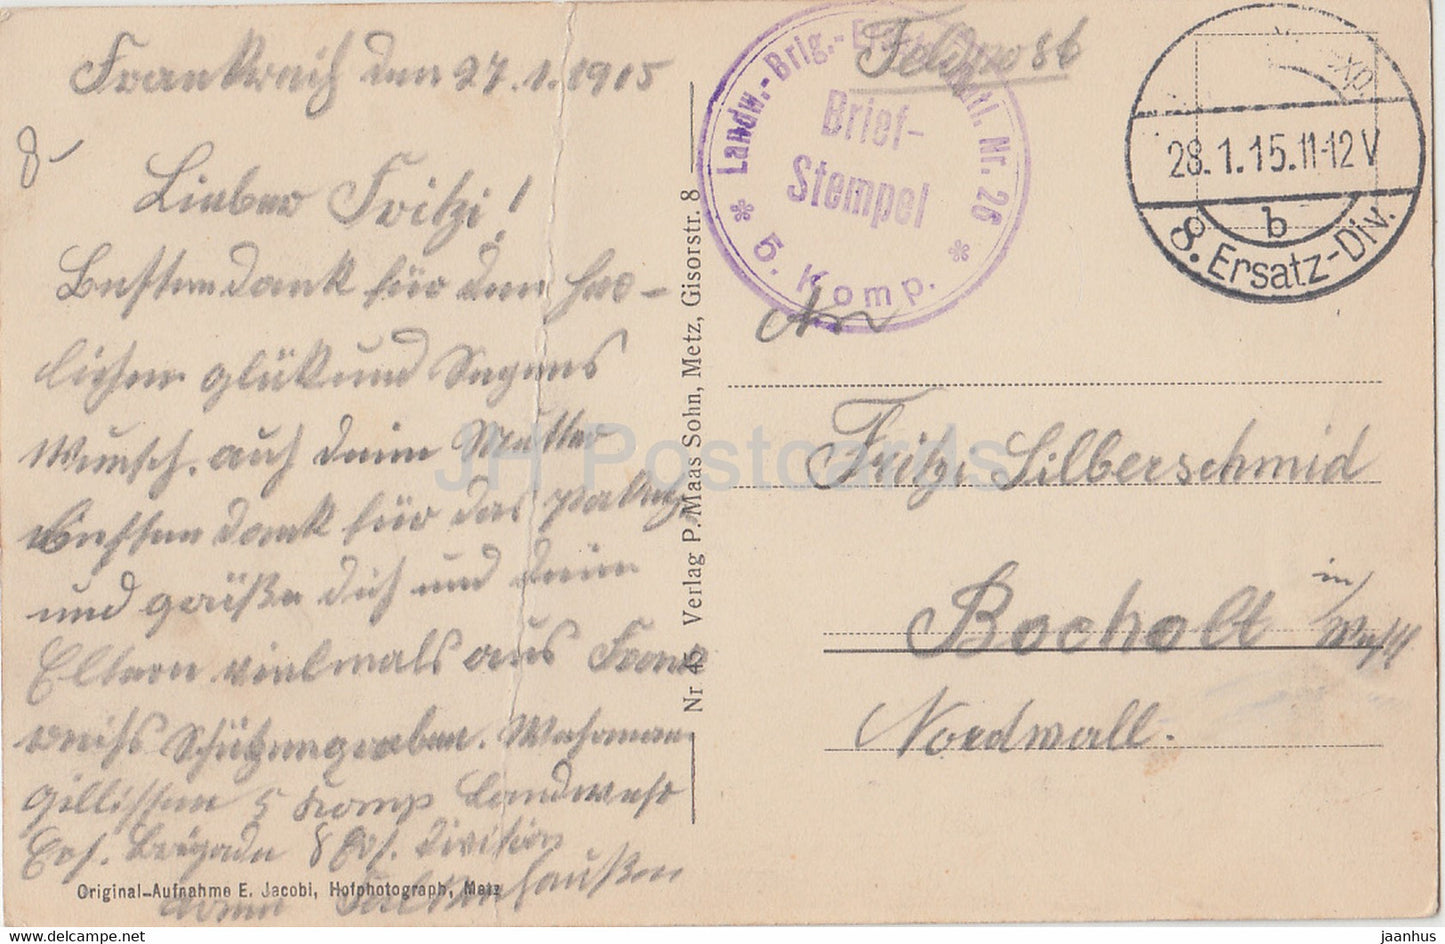 Schlachtfeld Buzy zwischen Conflans u Verdun - Offenes Heldengrab - Feldpost - alte Postkarte - 1915 - Frankreich - gebraucht